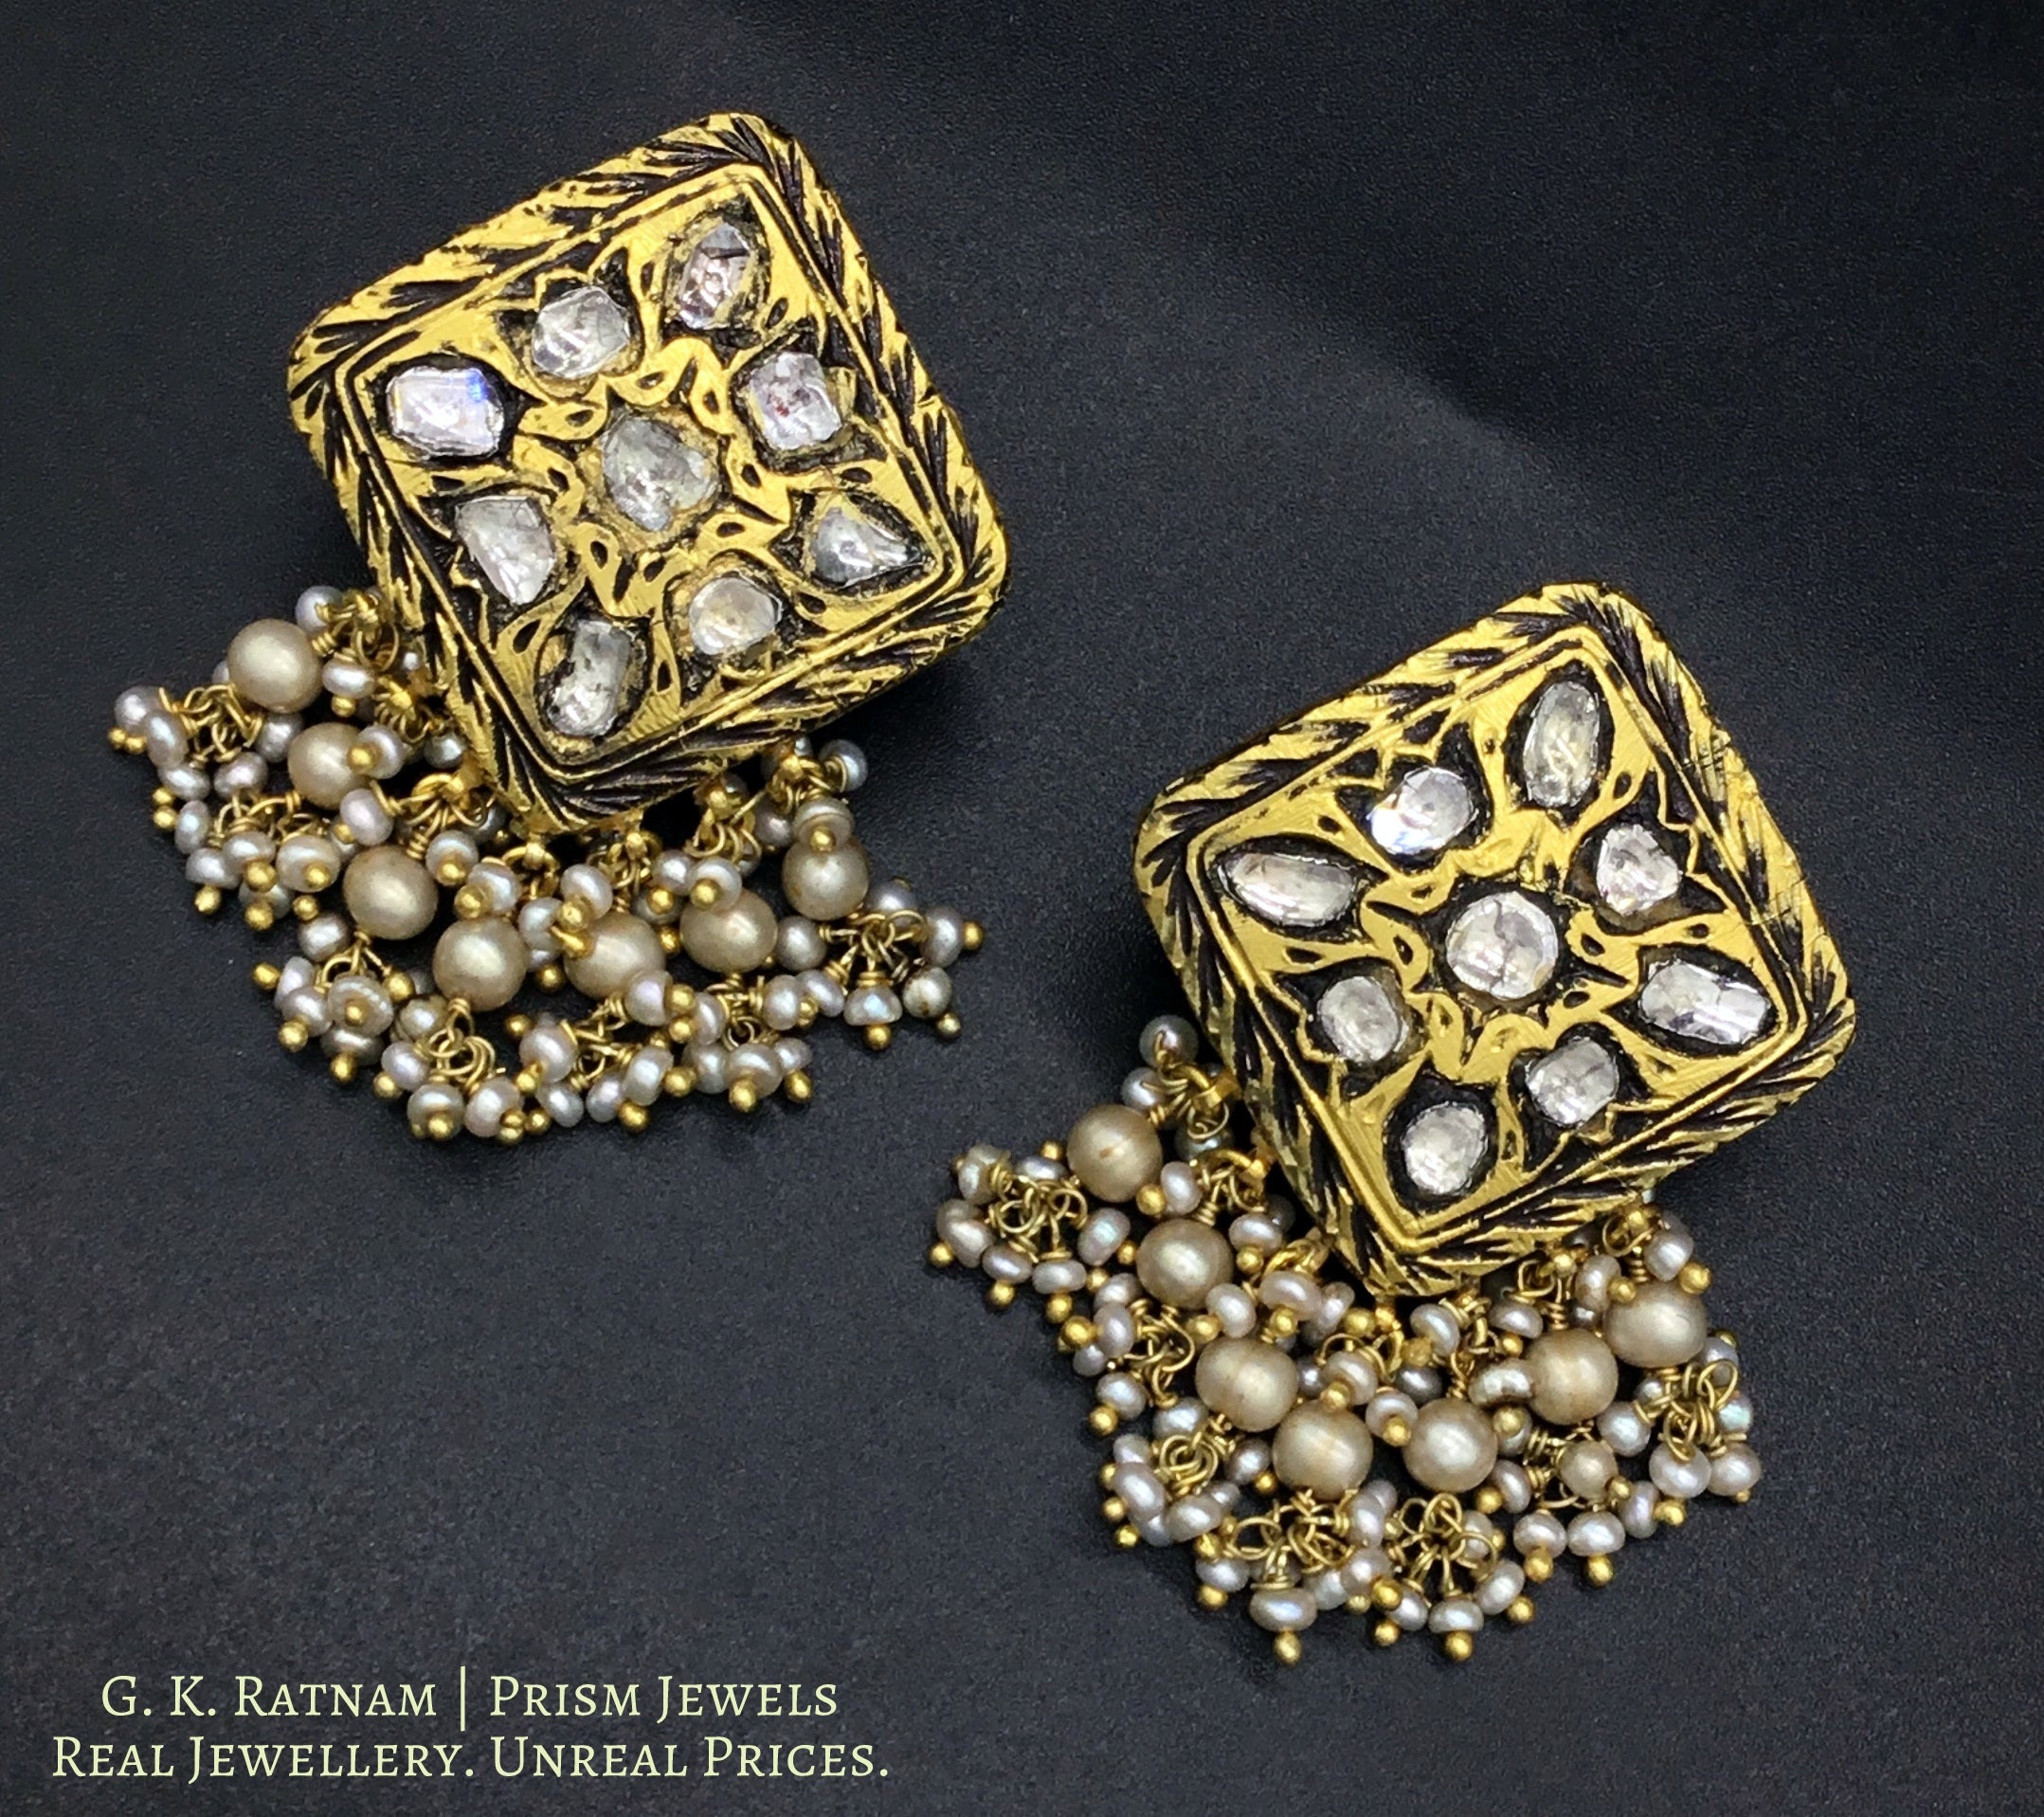 23k Gold and Diamond Polki vintage square Pendant Set with antiqued hyderabadi pearl chains - gold diamond polki kundan meena jadau jewellery